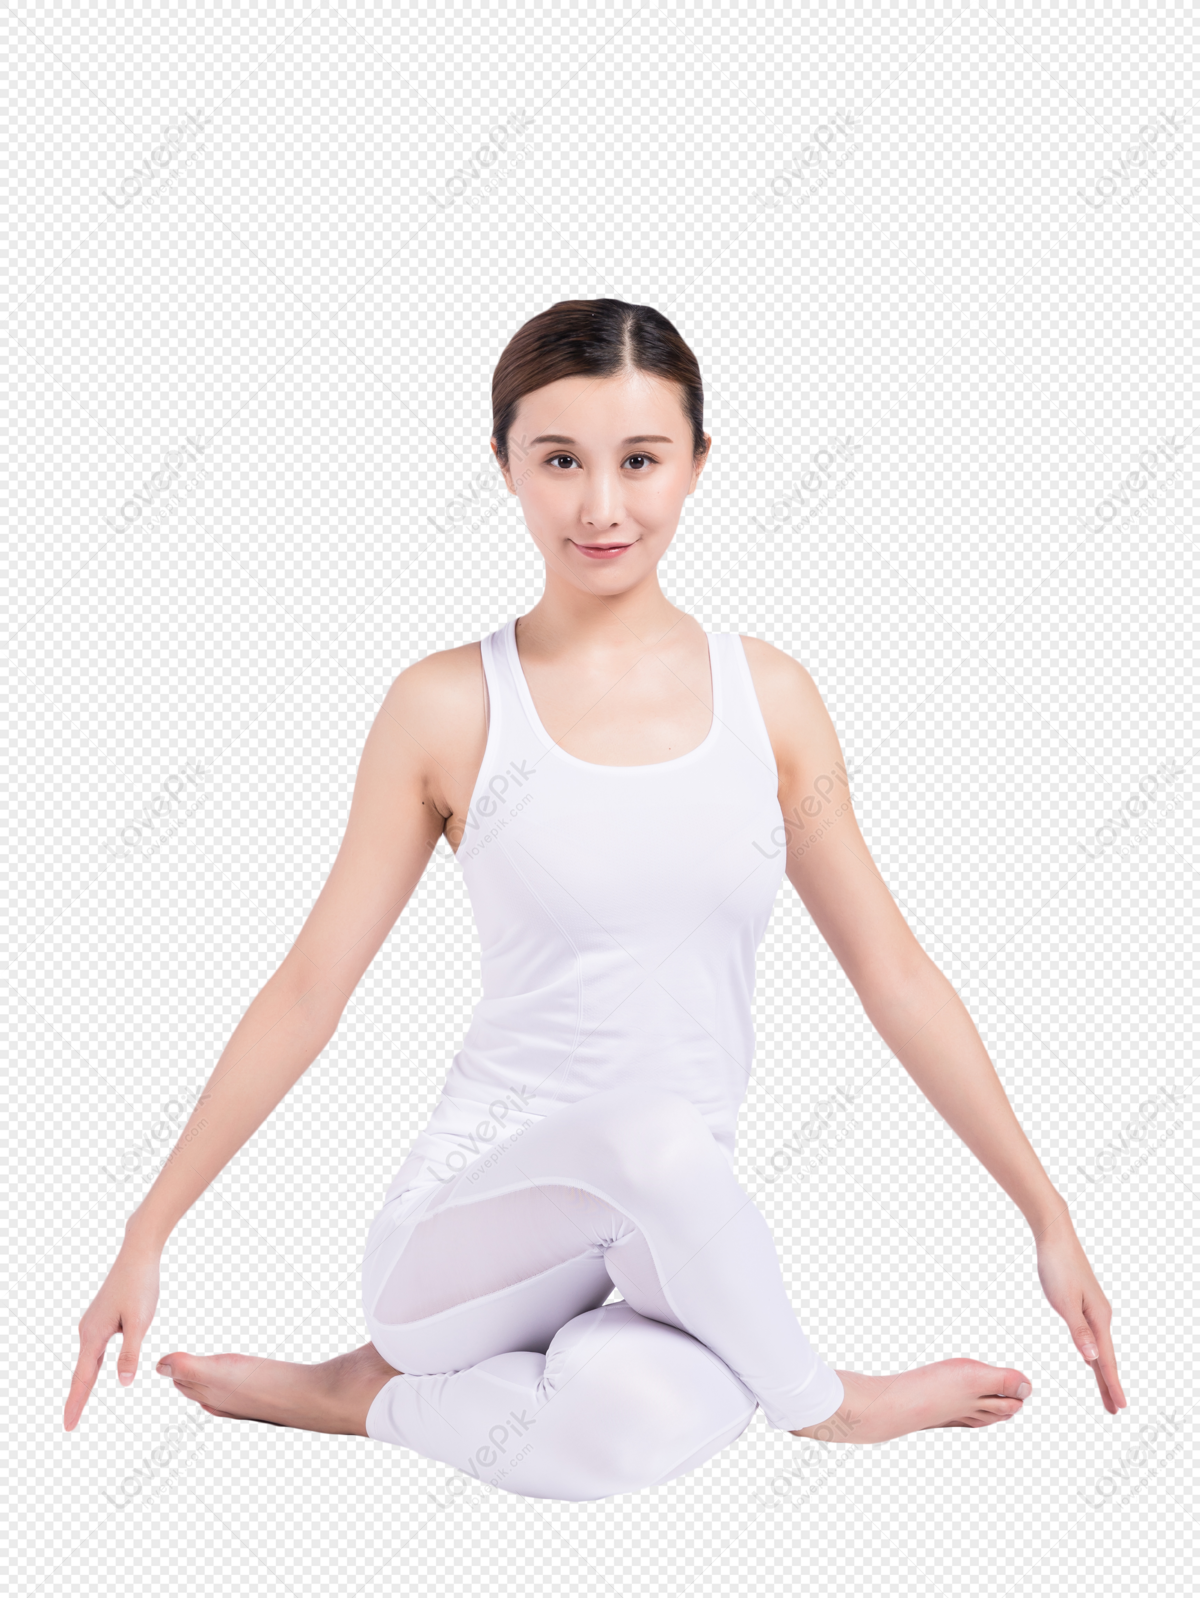 Hình ảnh Sức Khỏe Phụ Nữ Trong Tập Yoga PNG Miễn Phí Tải Về - Lovepik